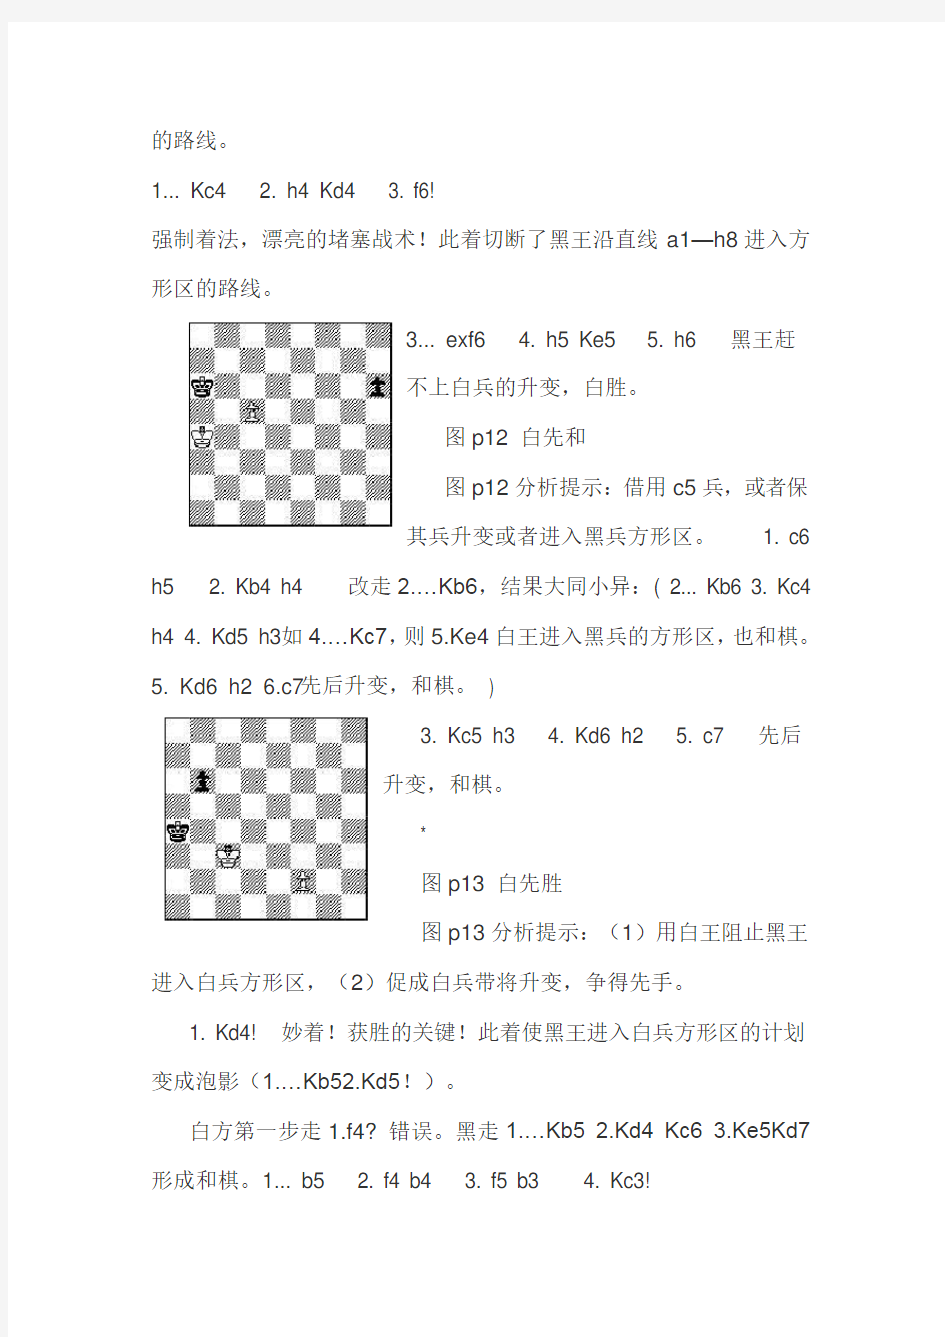 国际象棋定式